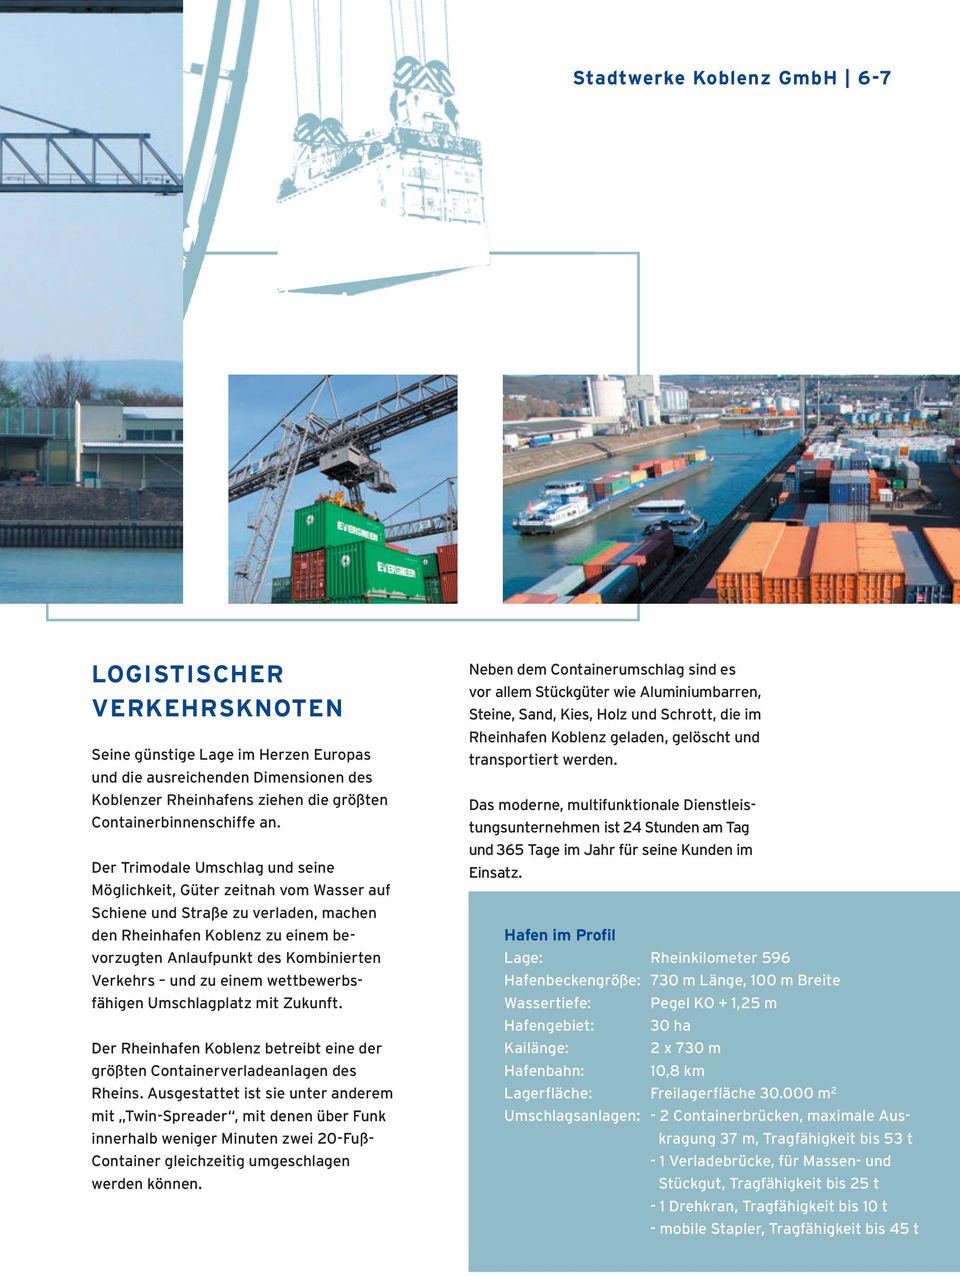 zu einem wettbewerbsfähigen Umschlagplatz mit Zukunft. Der Rheinhafen Koblenz betreibt eine der größten Containerverladeanlagen des Rheins.